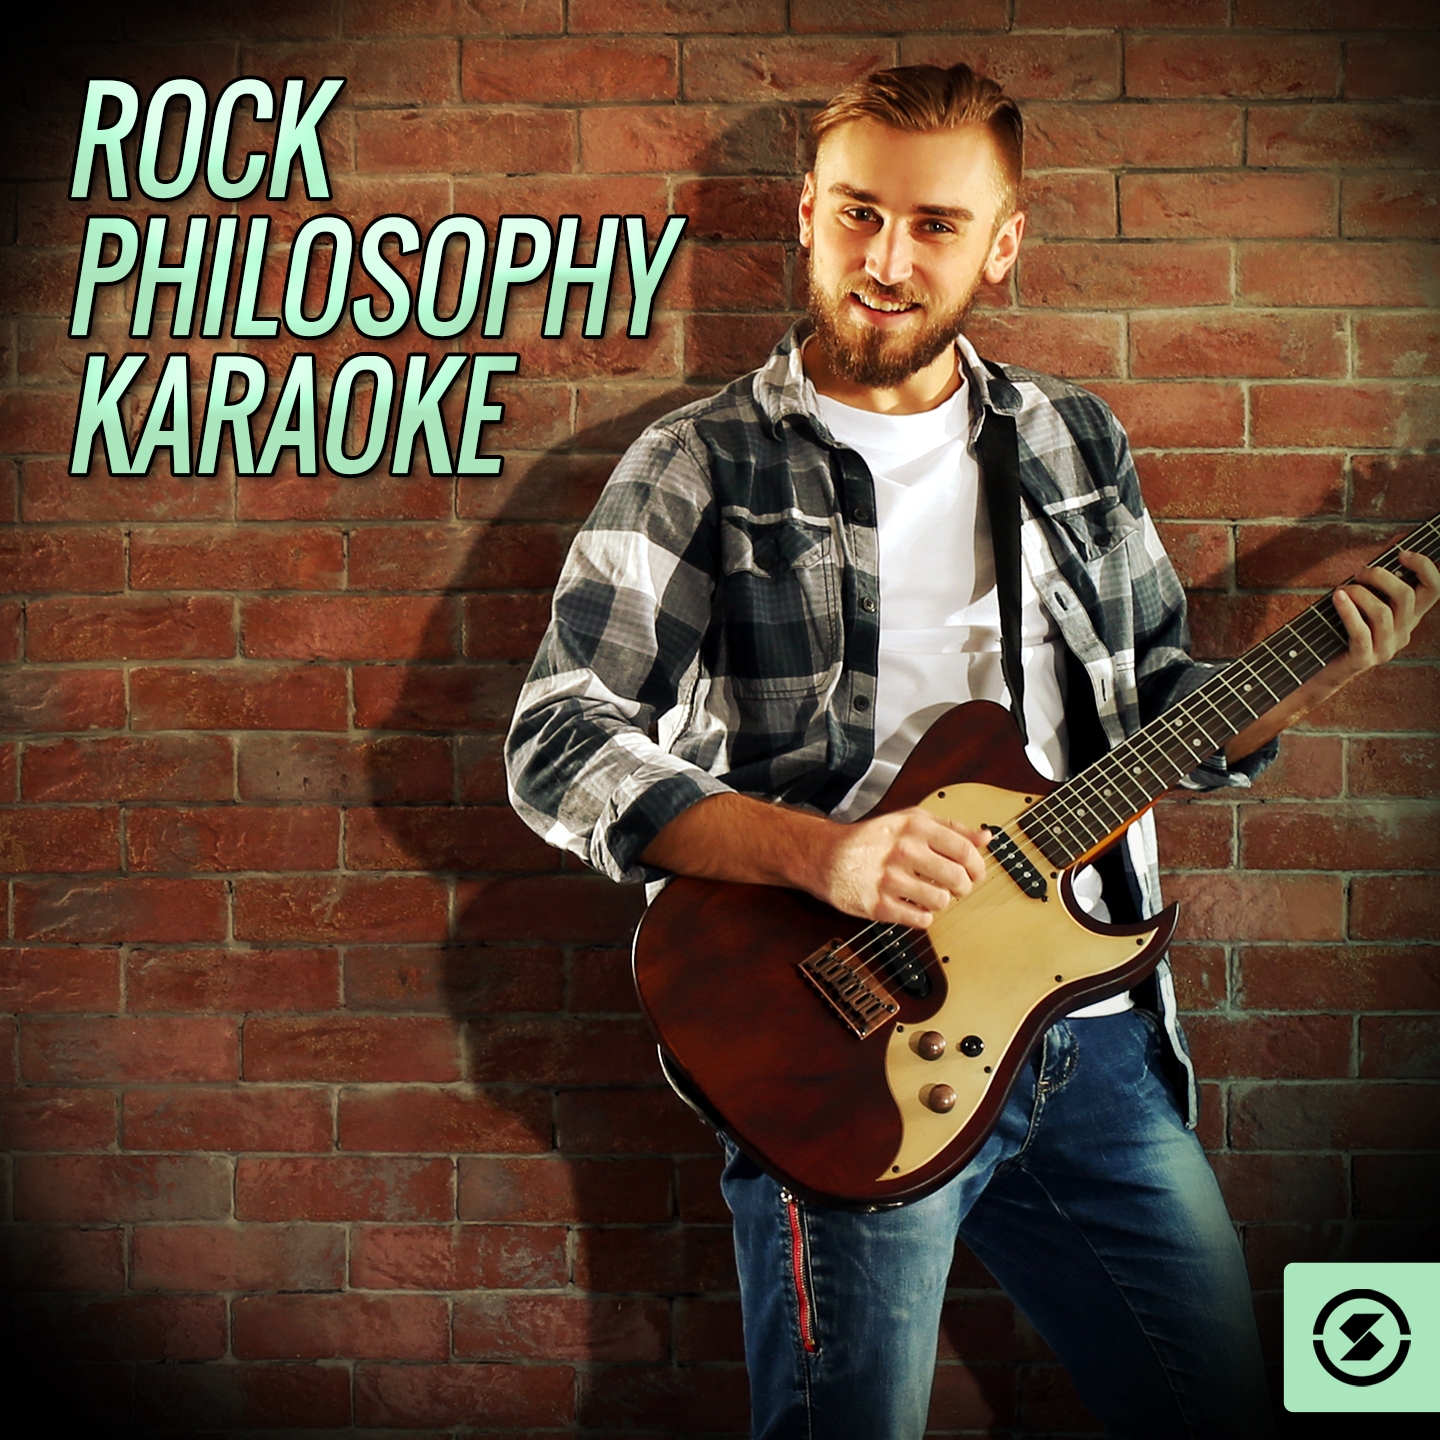 Rock Philosophy Karaoke